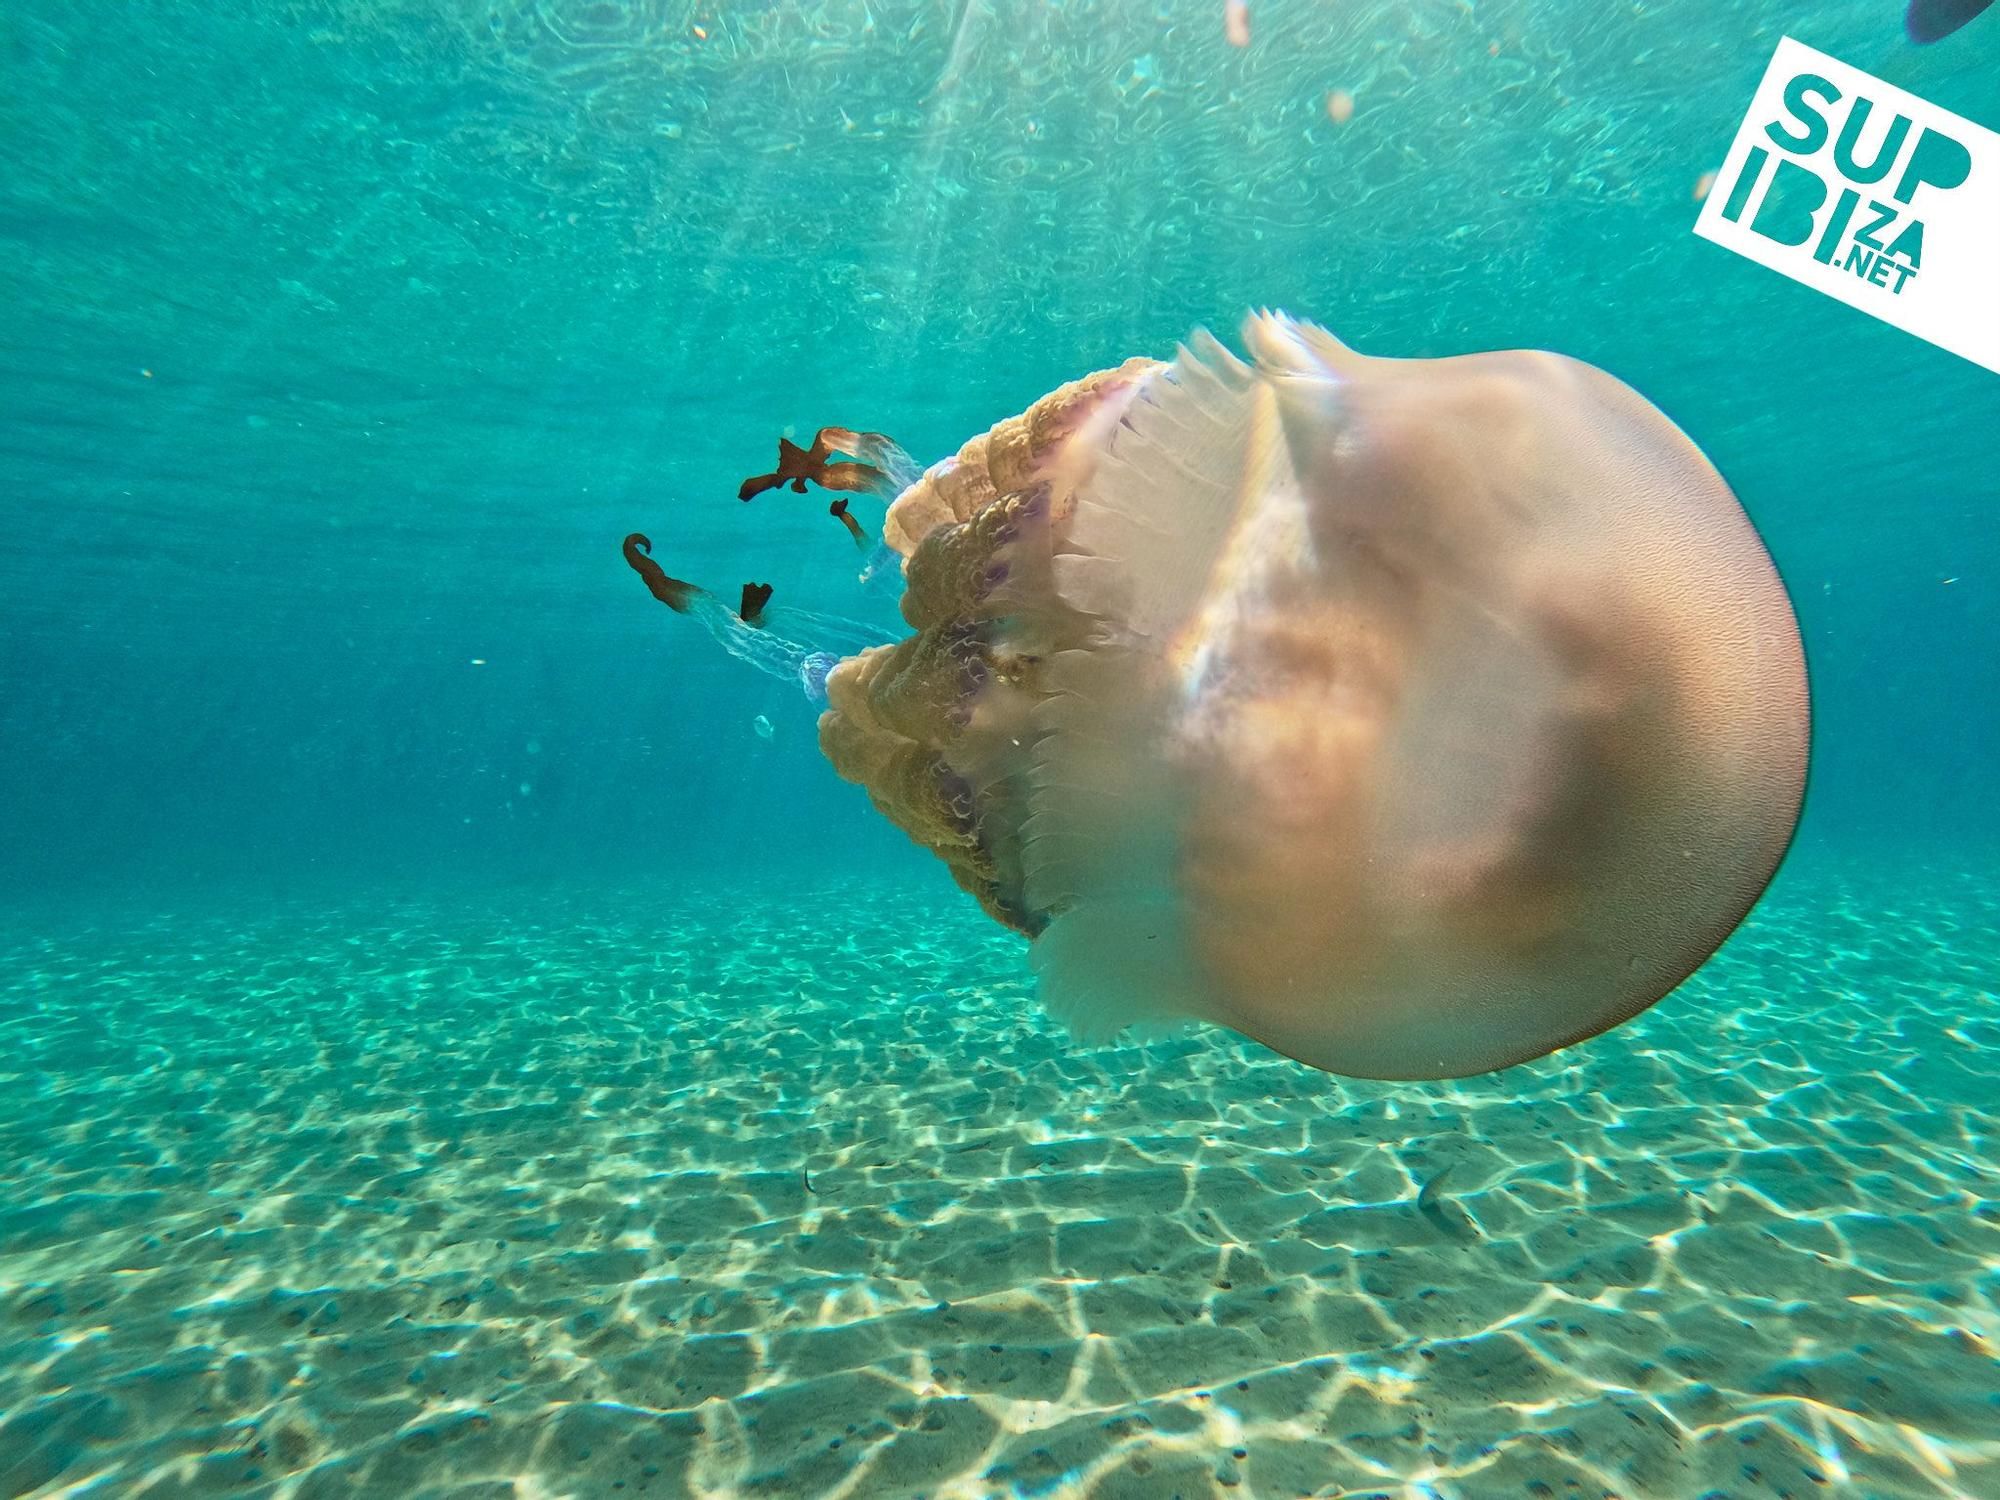 Un grup de turistes es troba meduses i s'enregistra amb elles